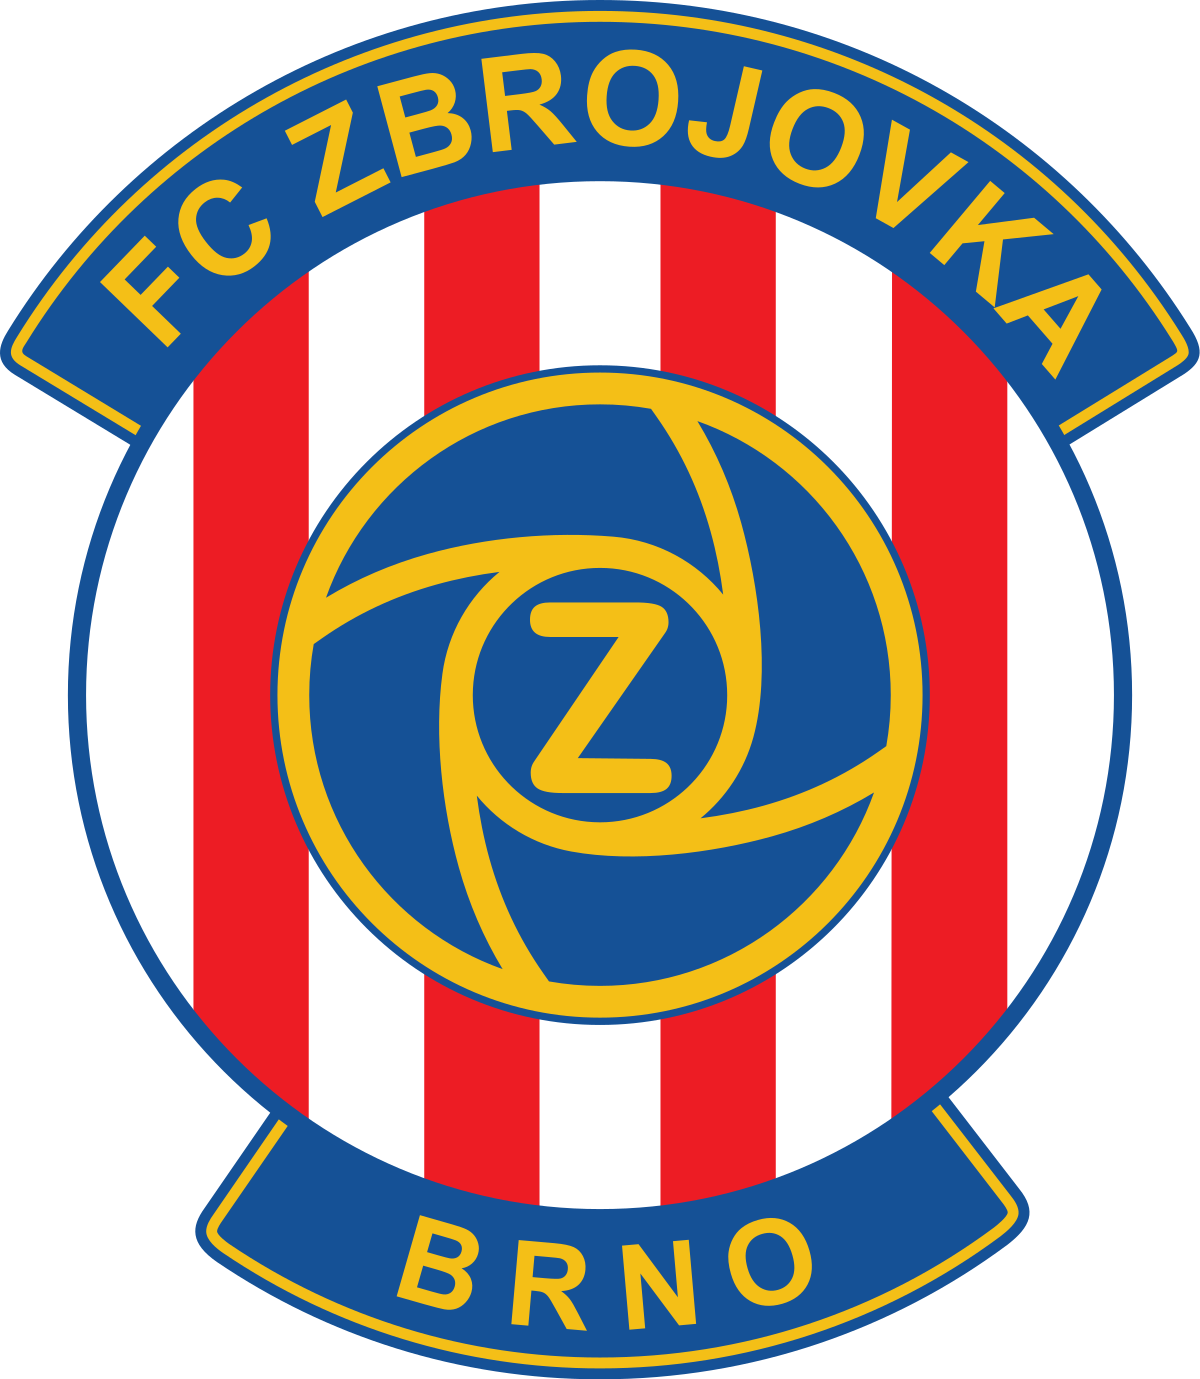 Brno-2 logo